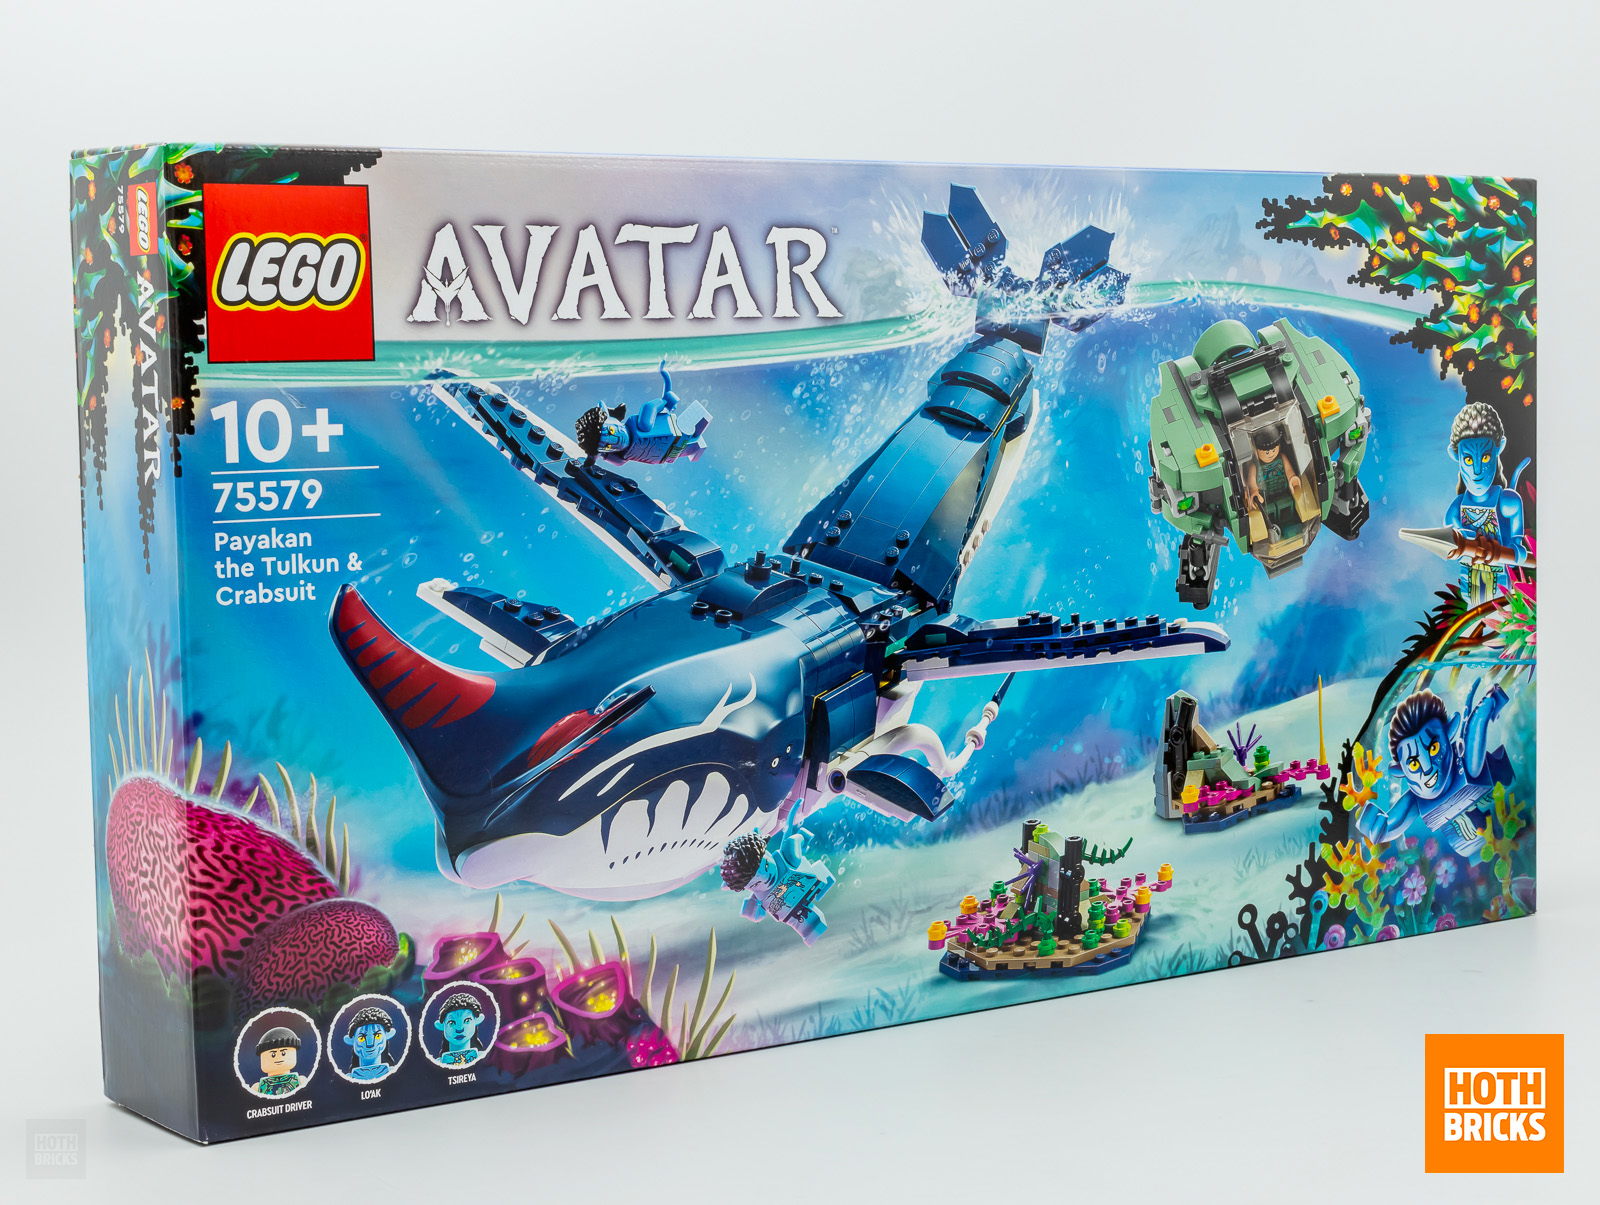 Gewinnspiel: Zu gewinnen ist eine Kopie des Sets LEGO Avatar 75579 Payakan The Tulkun & Crabsuit!